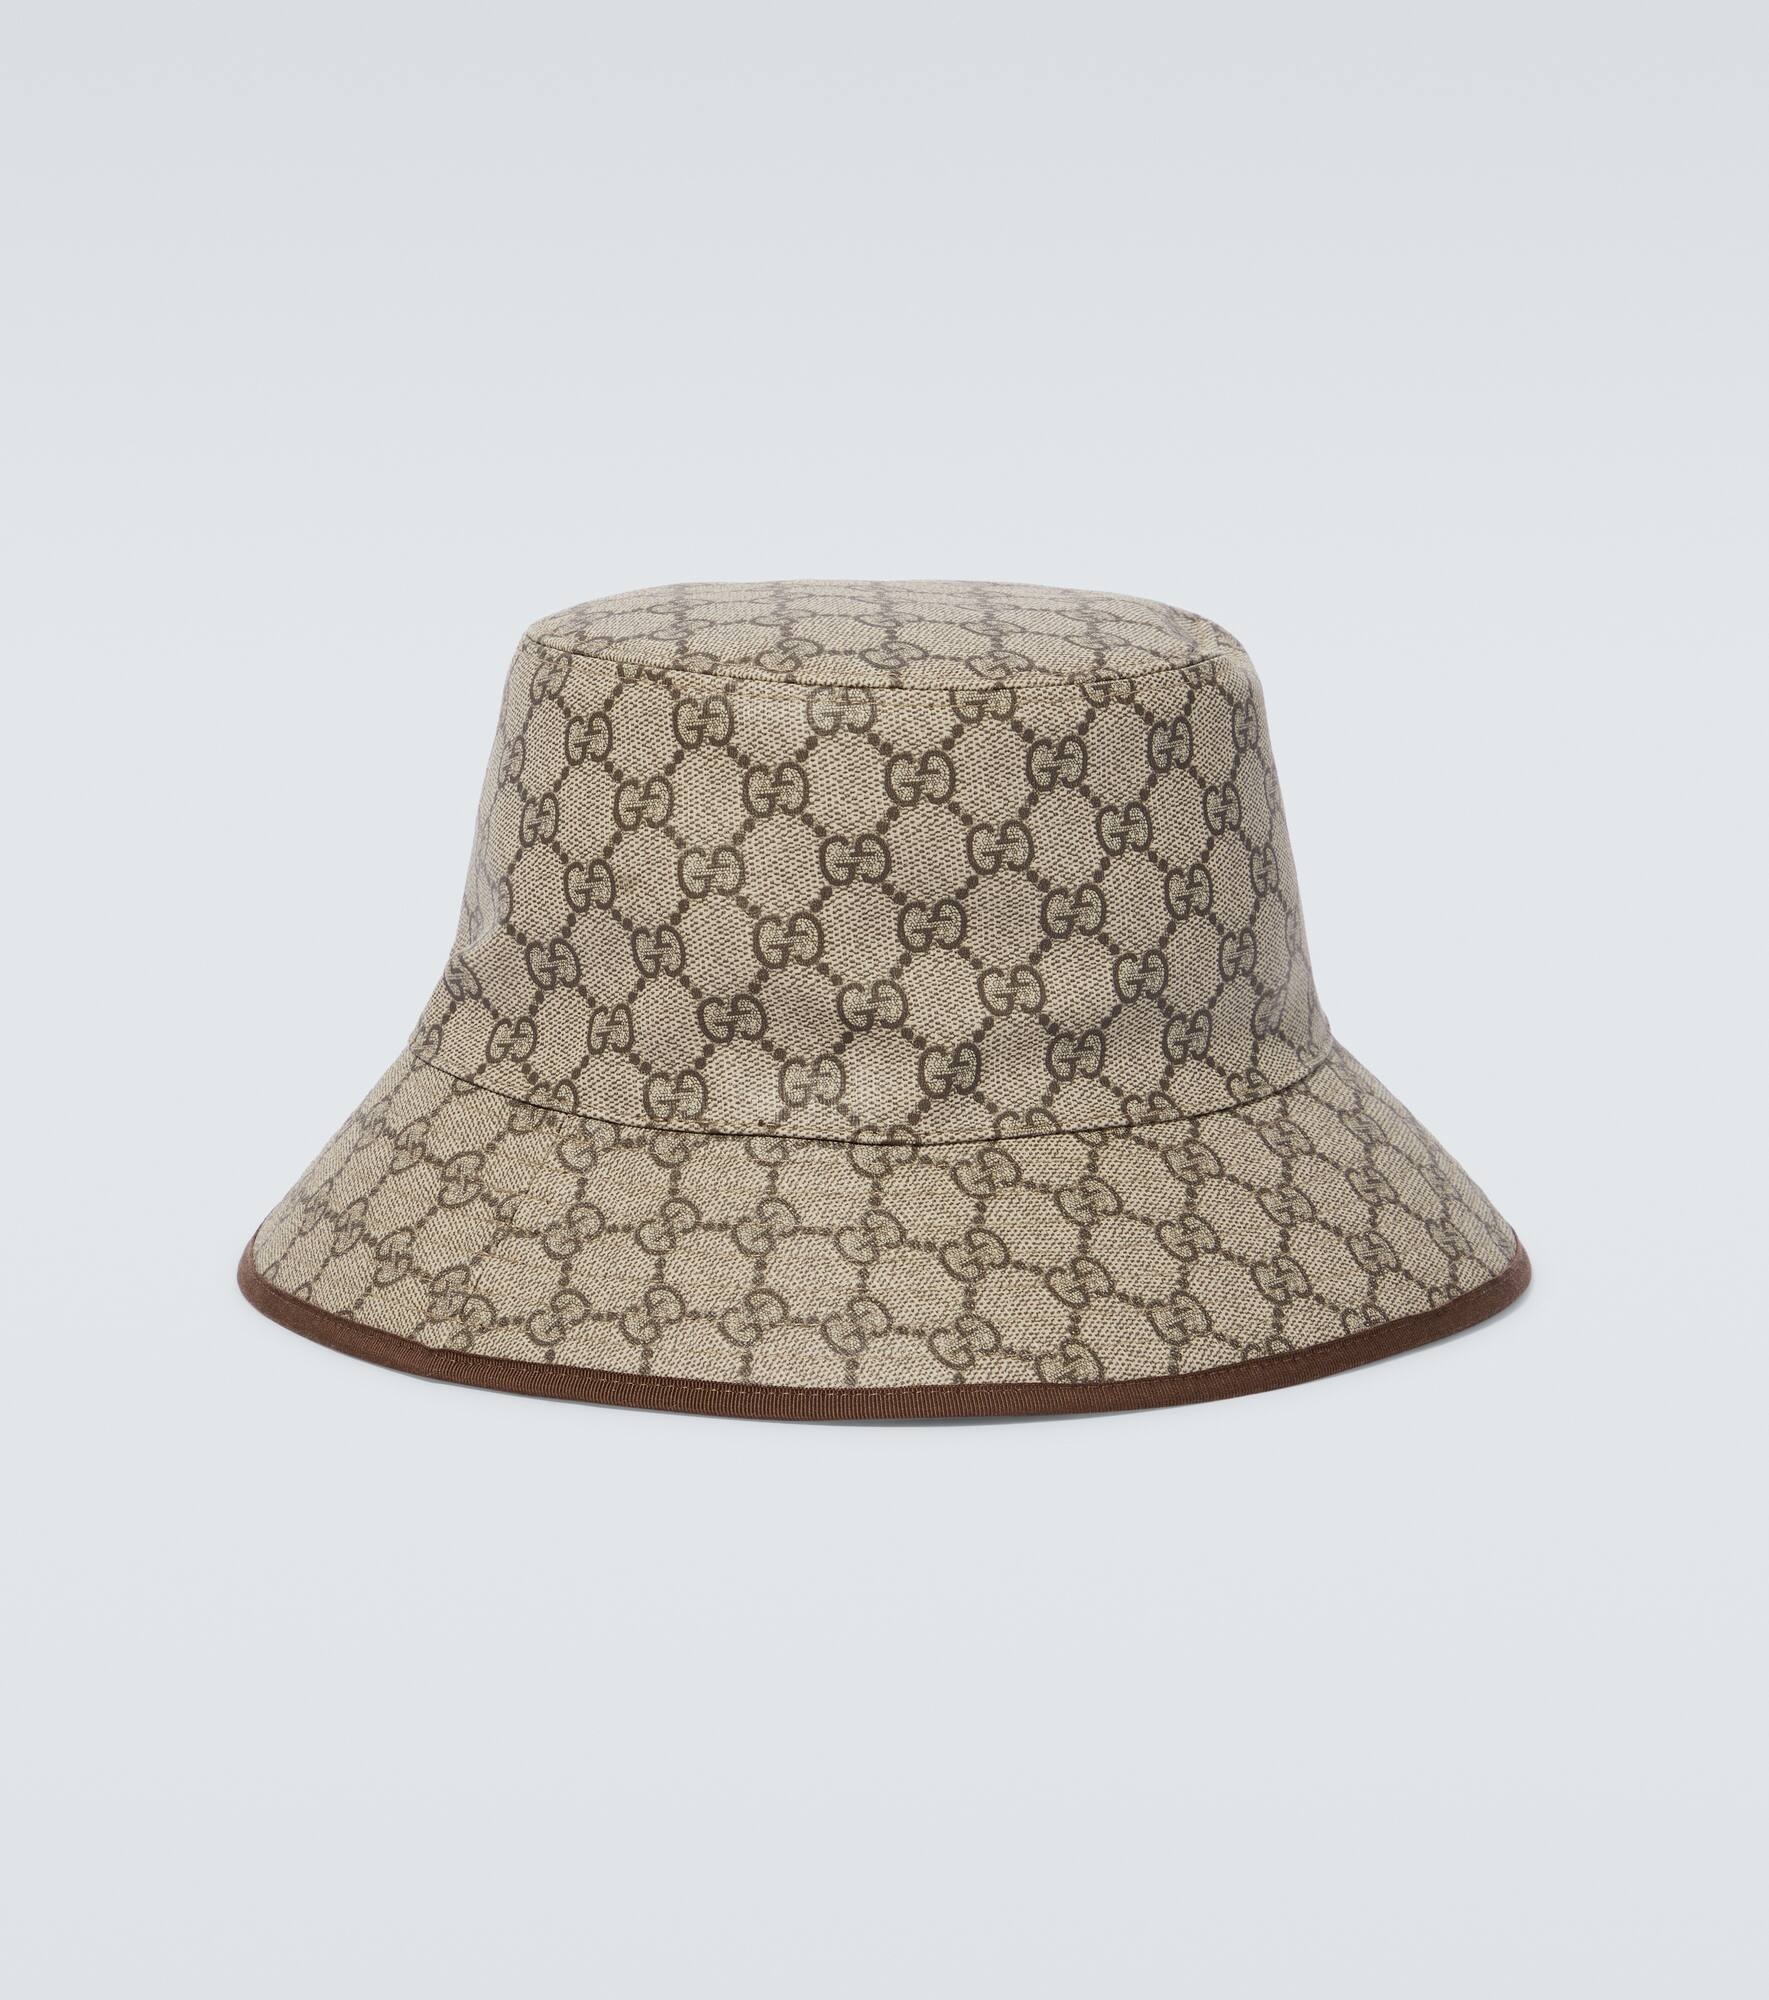 GG canvas bucket hat - 4